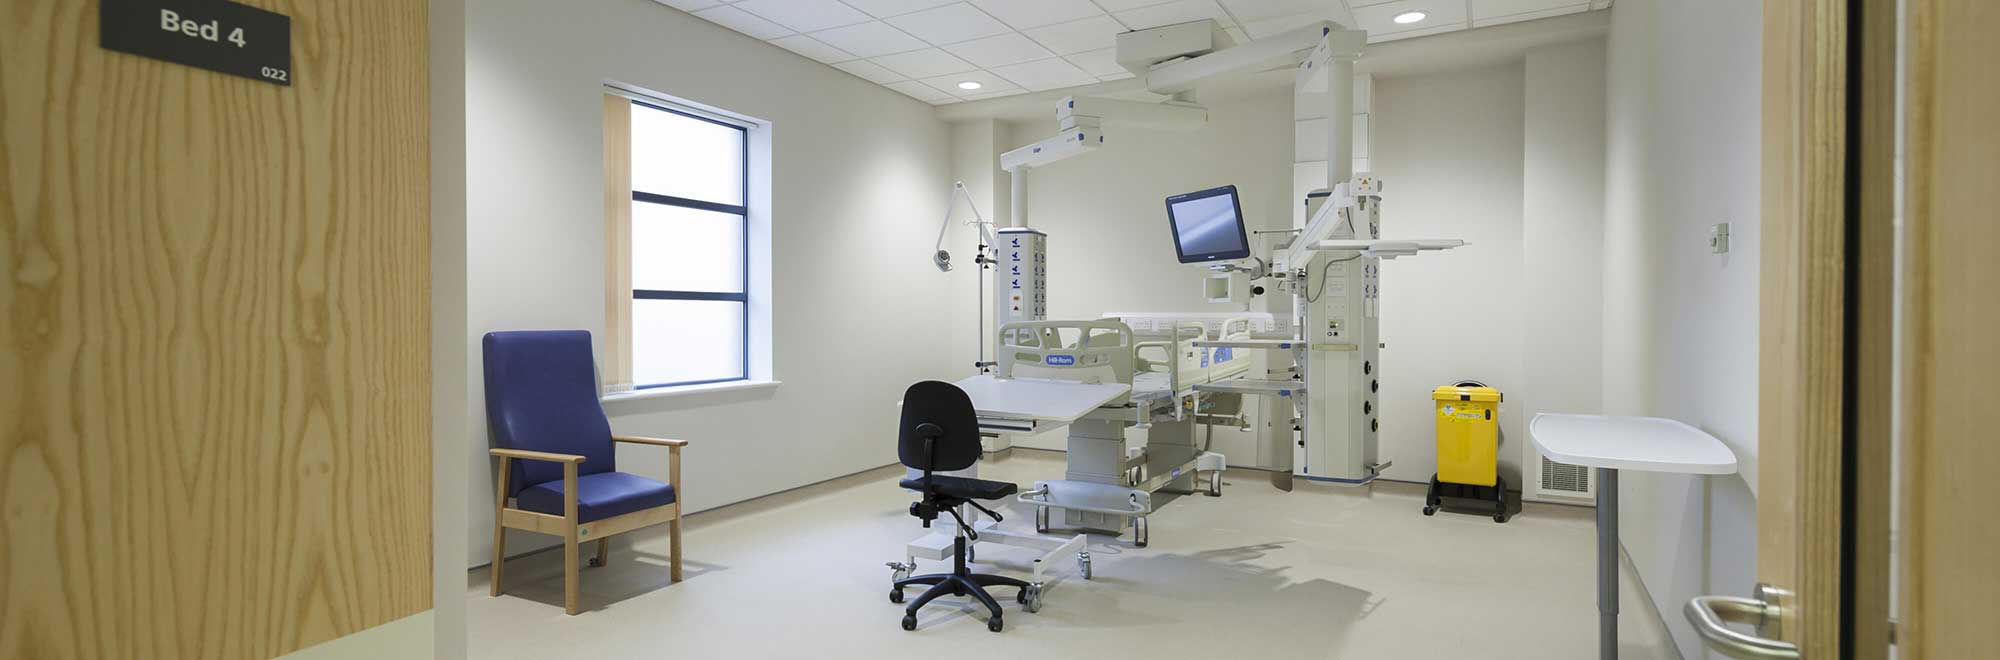 Royal Stoke modular hospital room